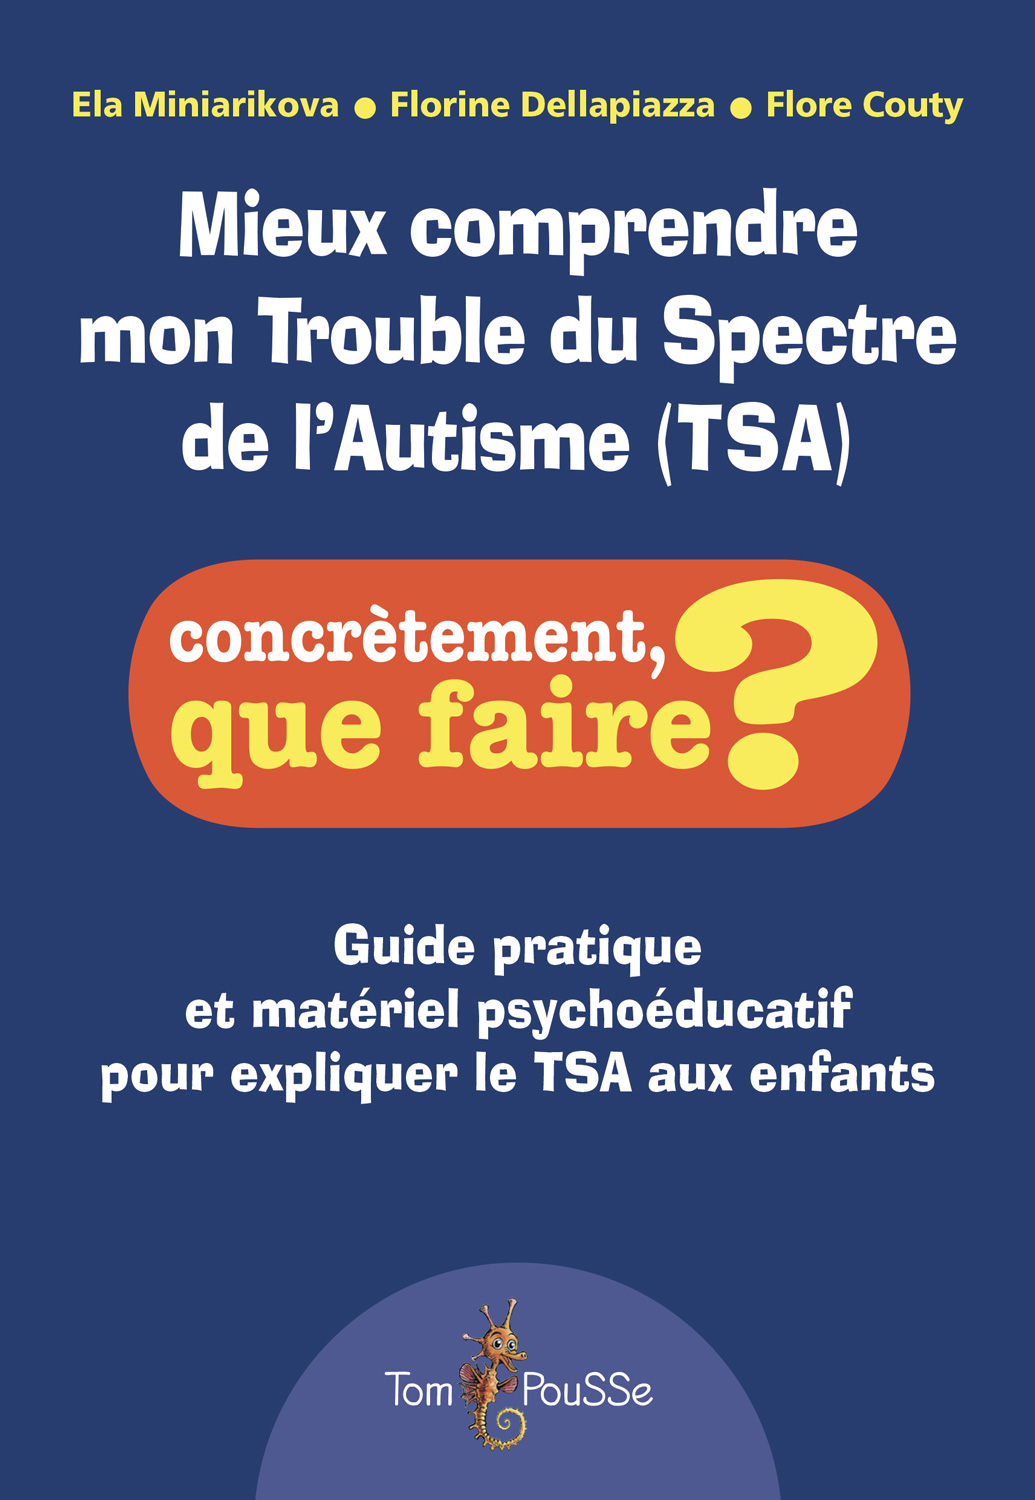 Formation - Trouble du Spectre de l'Autisme TSA : Comprendre et accompagner